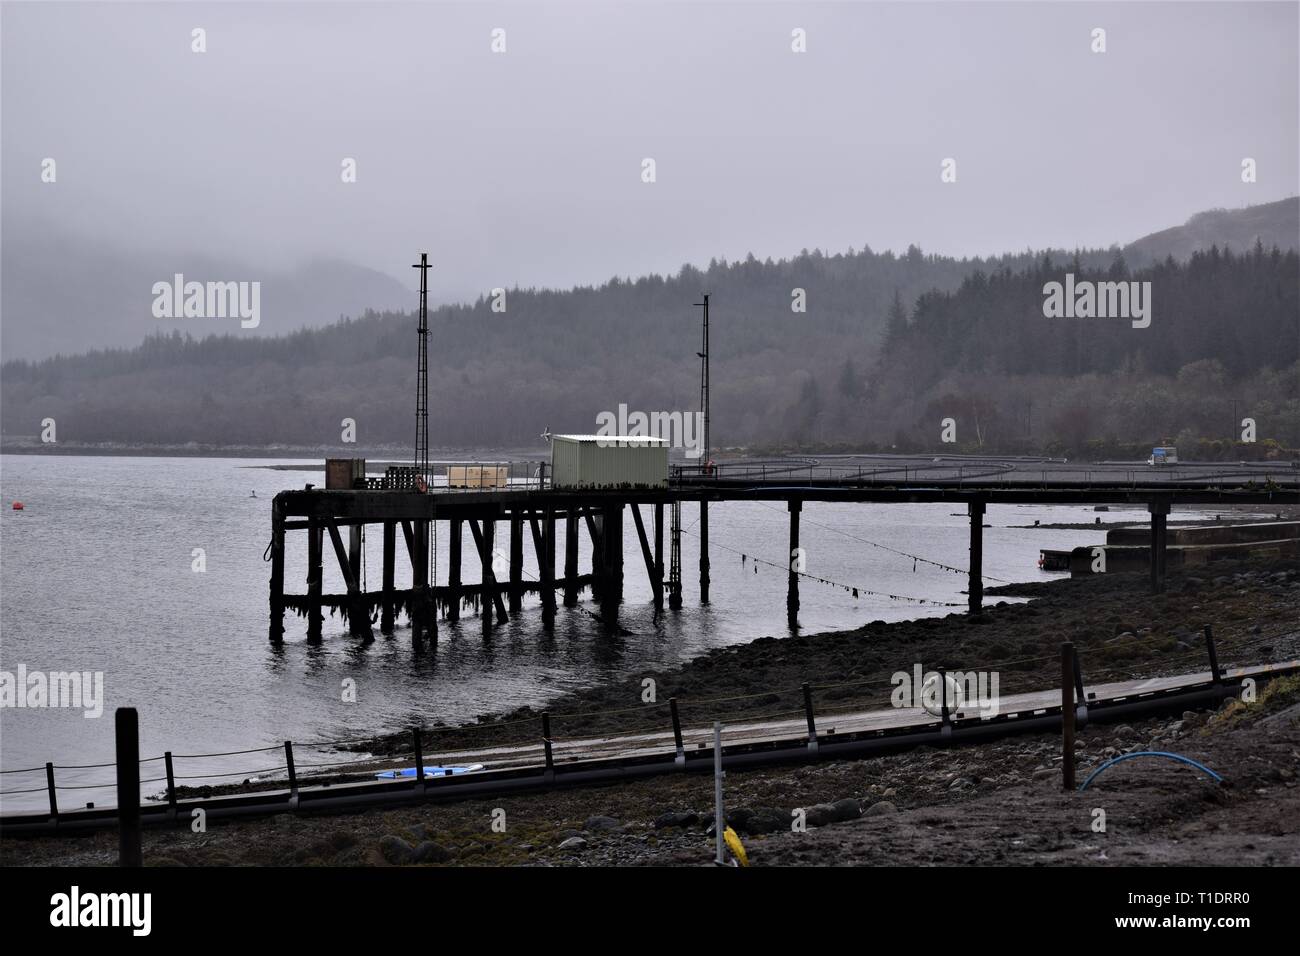 Scottish Sea Farmen Süßwasser, Lachs fischzuchtanstalt Pier am Loch Creran. Misty Szene erinnert an ein Gefühl von Frieden, Ruhe und otherworldliness. Stockfoto